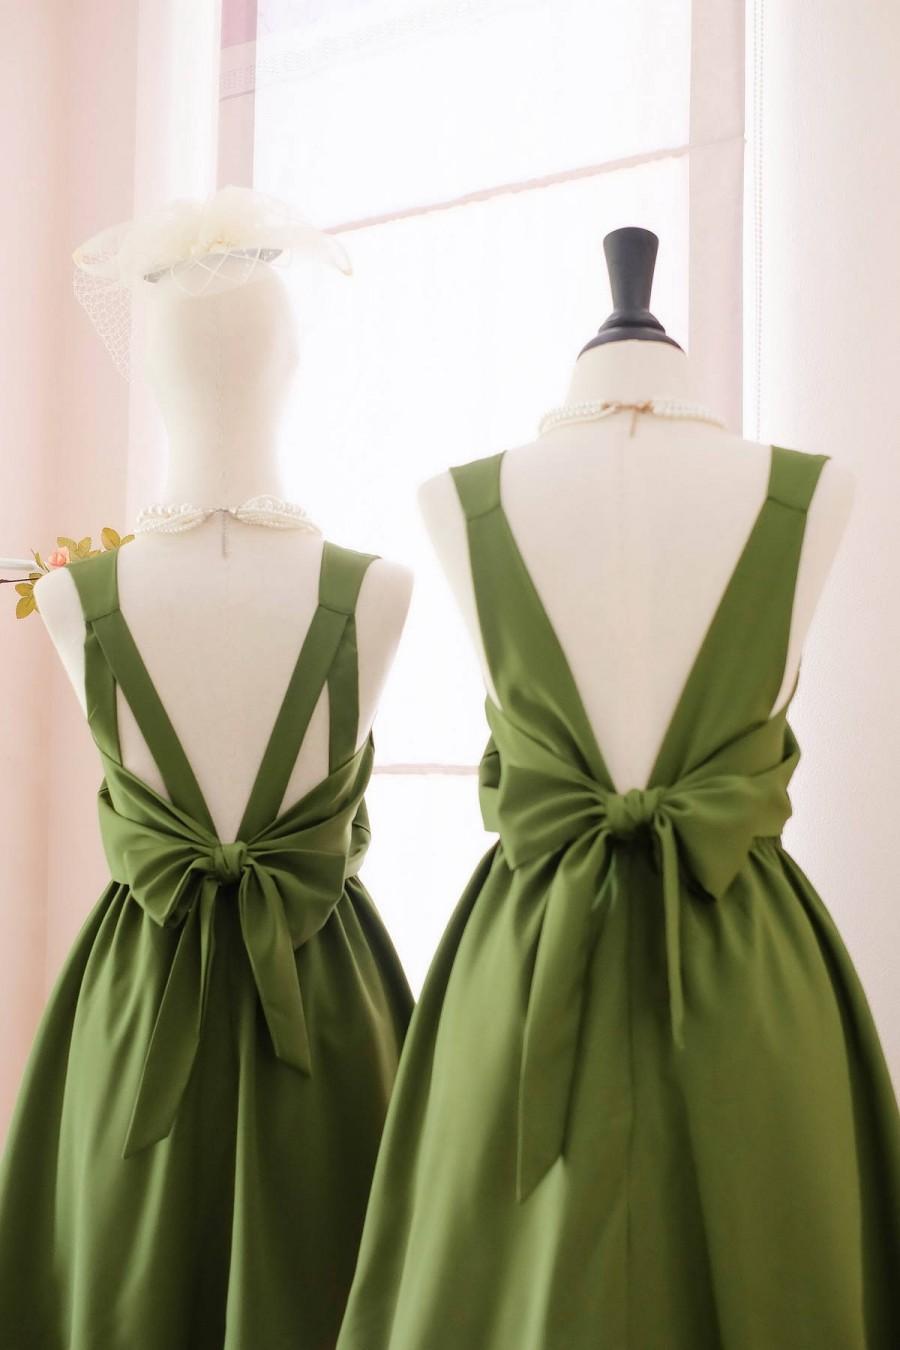 Mariage - Moss green dress green Bridesmaid dress Wedding Prom dress Cocktail Party dress Evening dress Backless bow dress